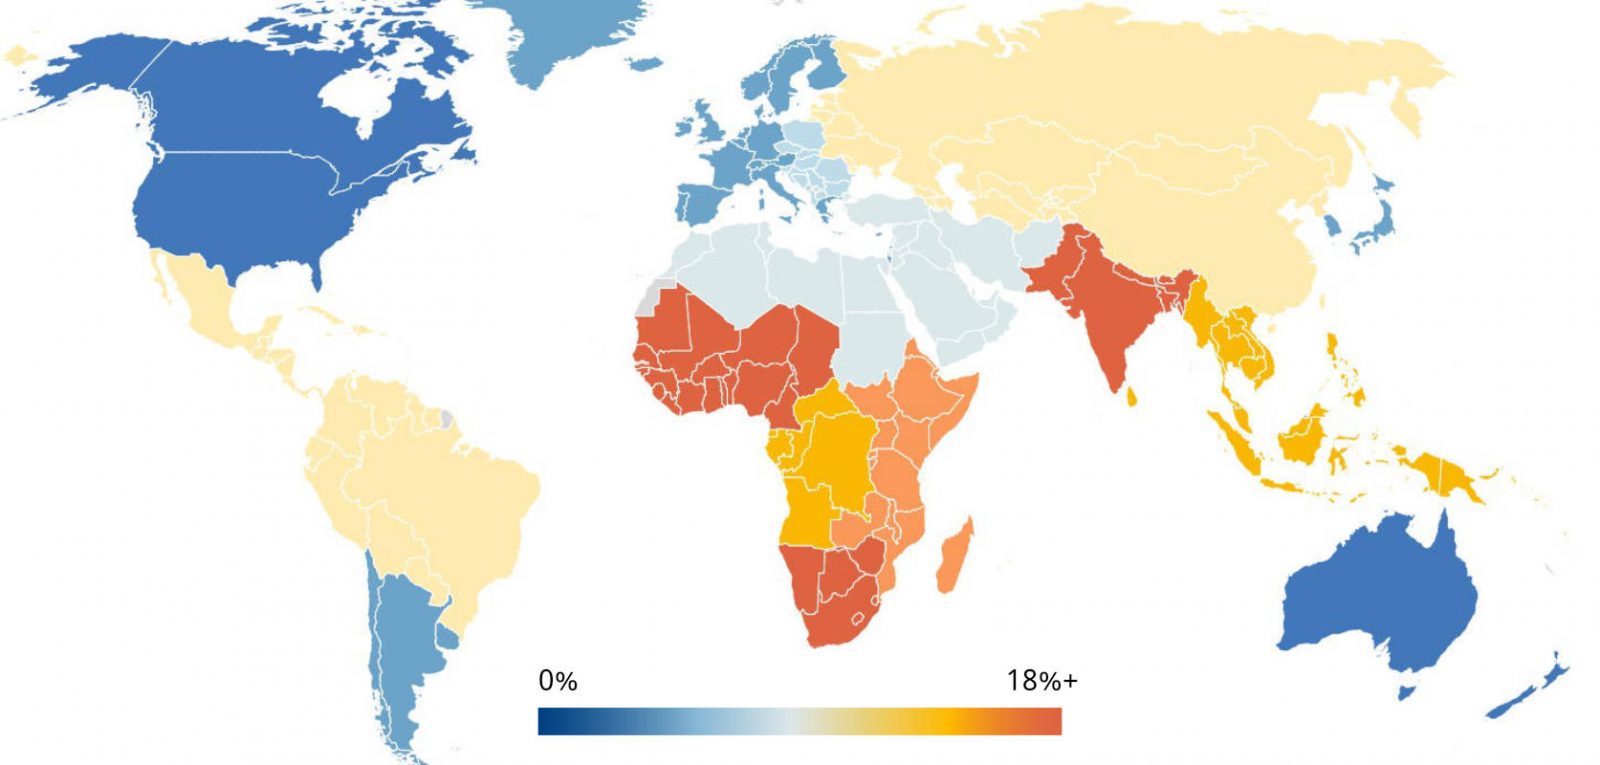 Carte du monde montrant les taux de perte de vision, élevés en Afrique et en Asie du Sud